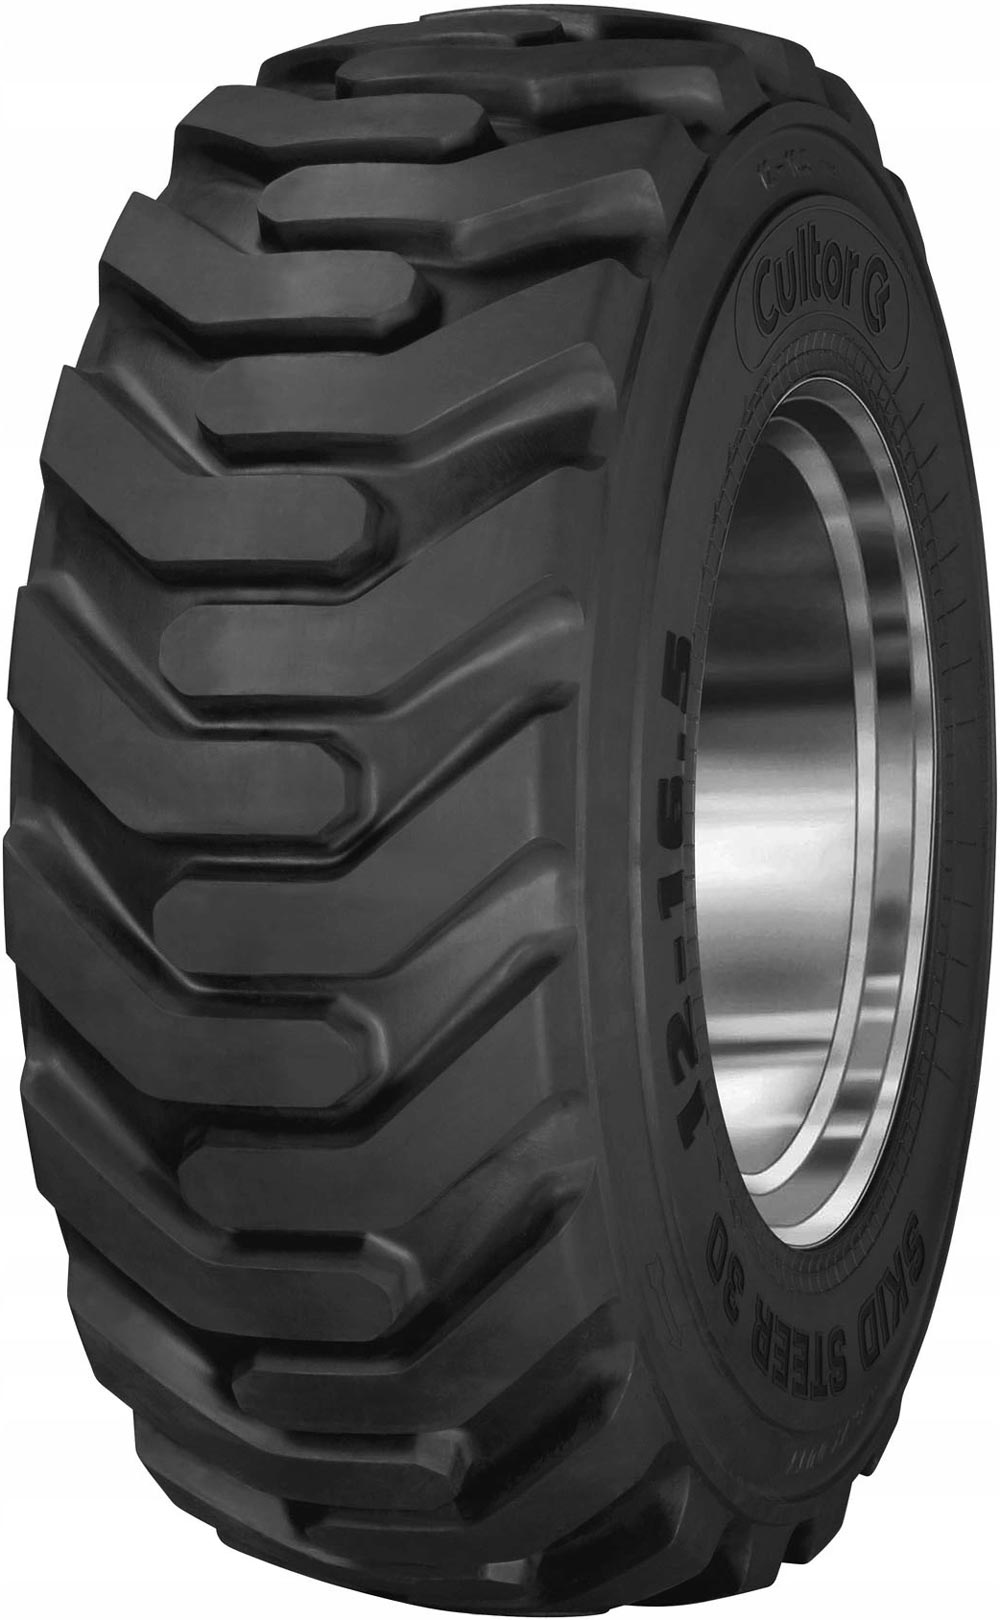 product_type-industrial_tires CULTOR SKID STEER 30 12PR TL 12 R16.5 P